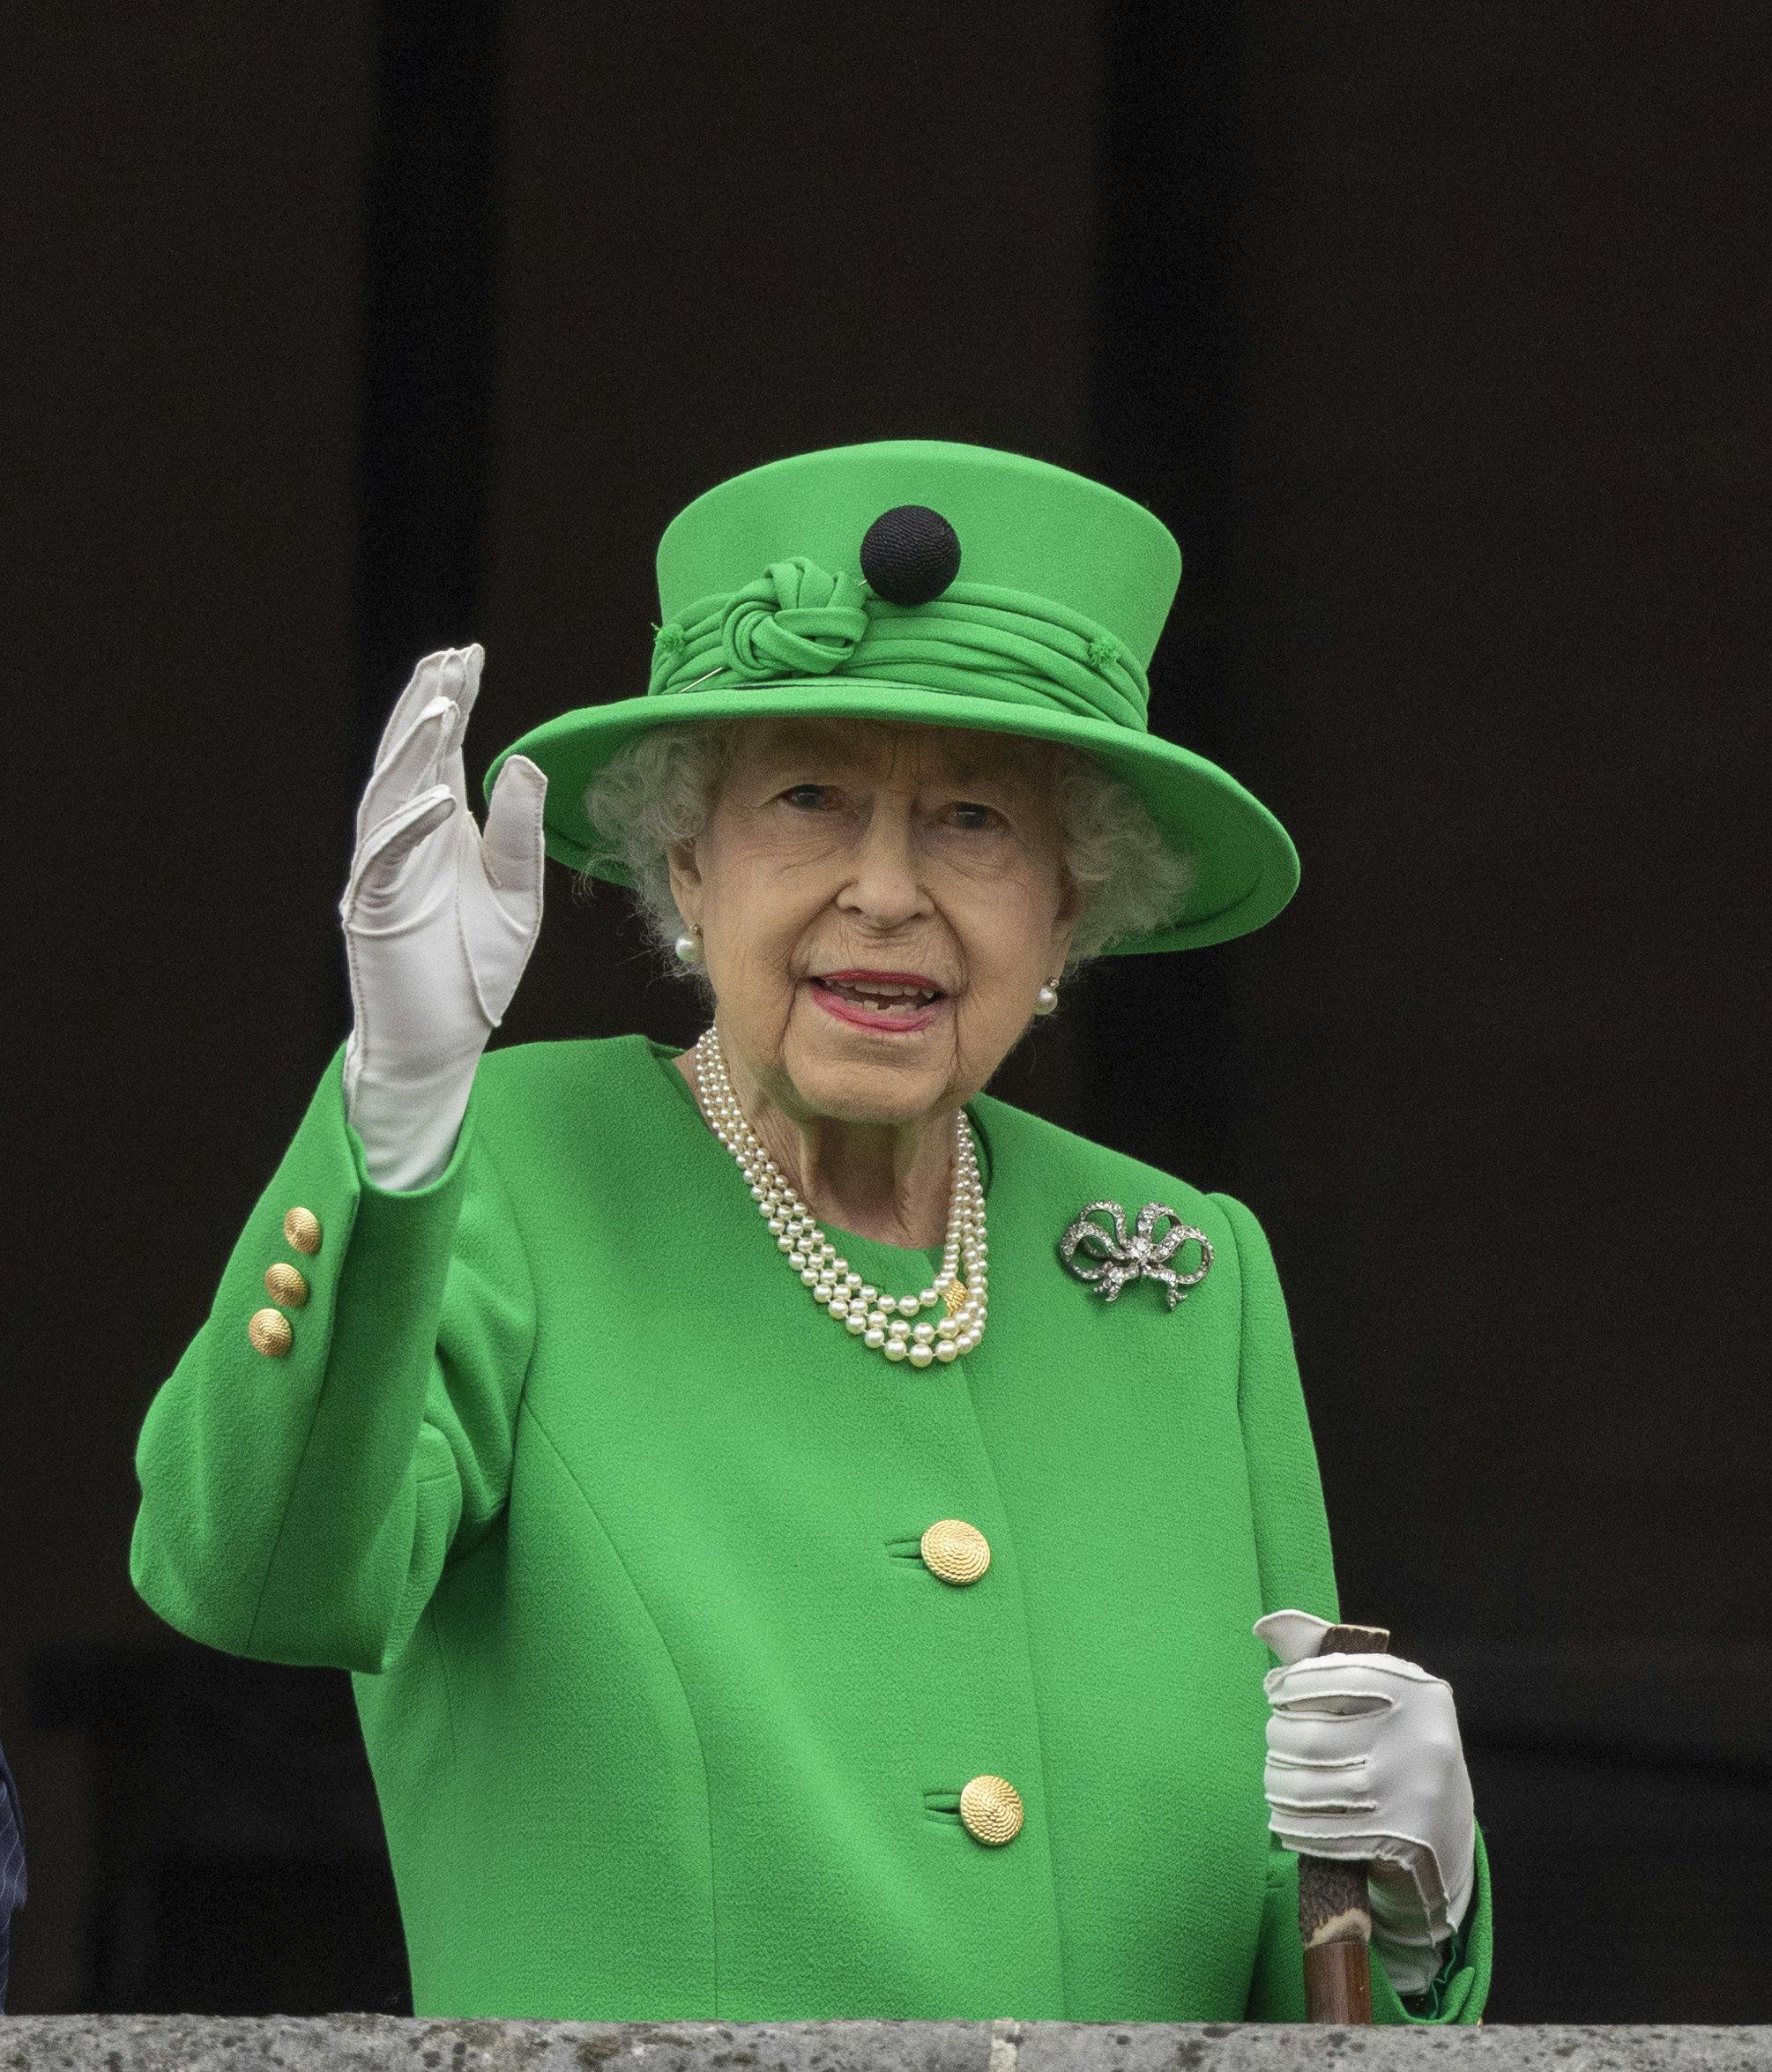 Dronning Elizabeth på balkonen søndag den 5. juni 2022.
